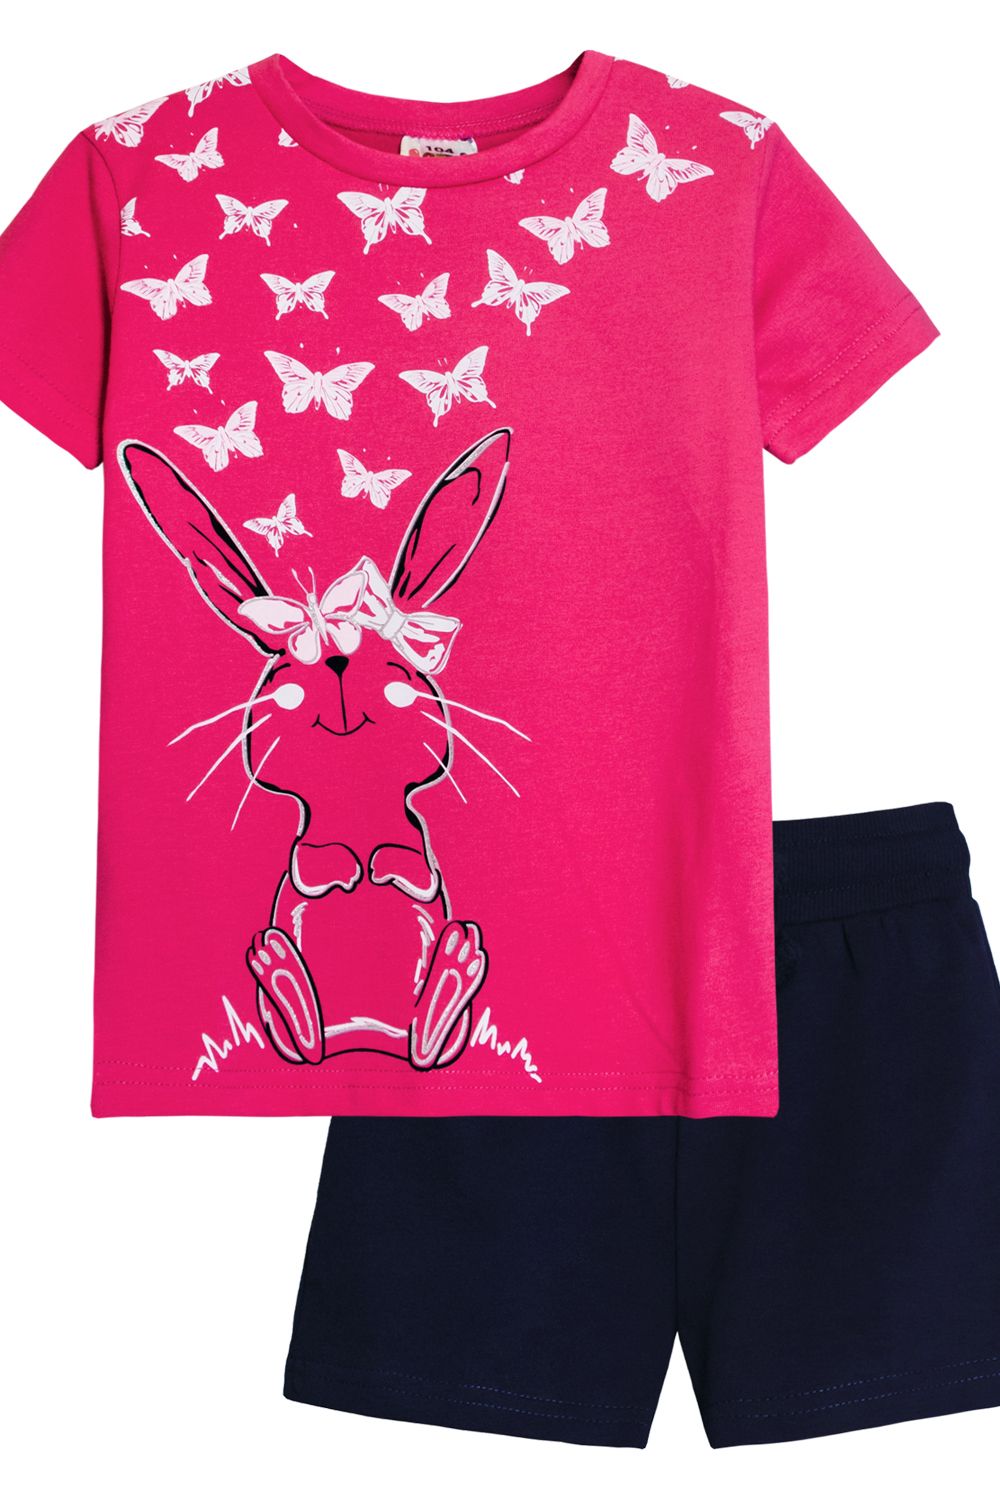 Комплект для девочки 41106 (футболка+ шорты) - розовый/т.синий